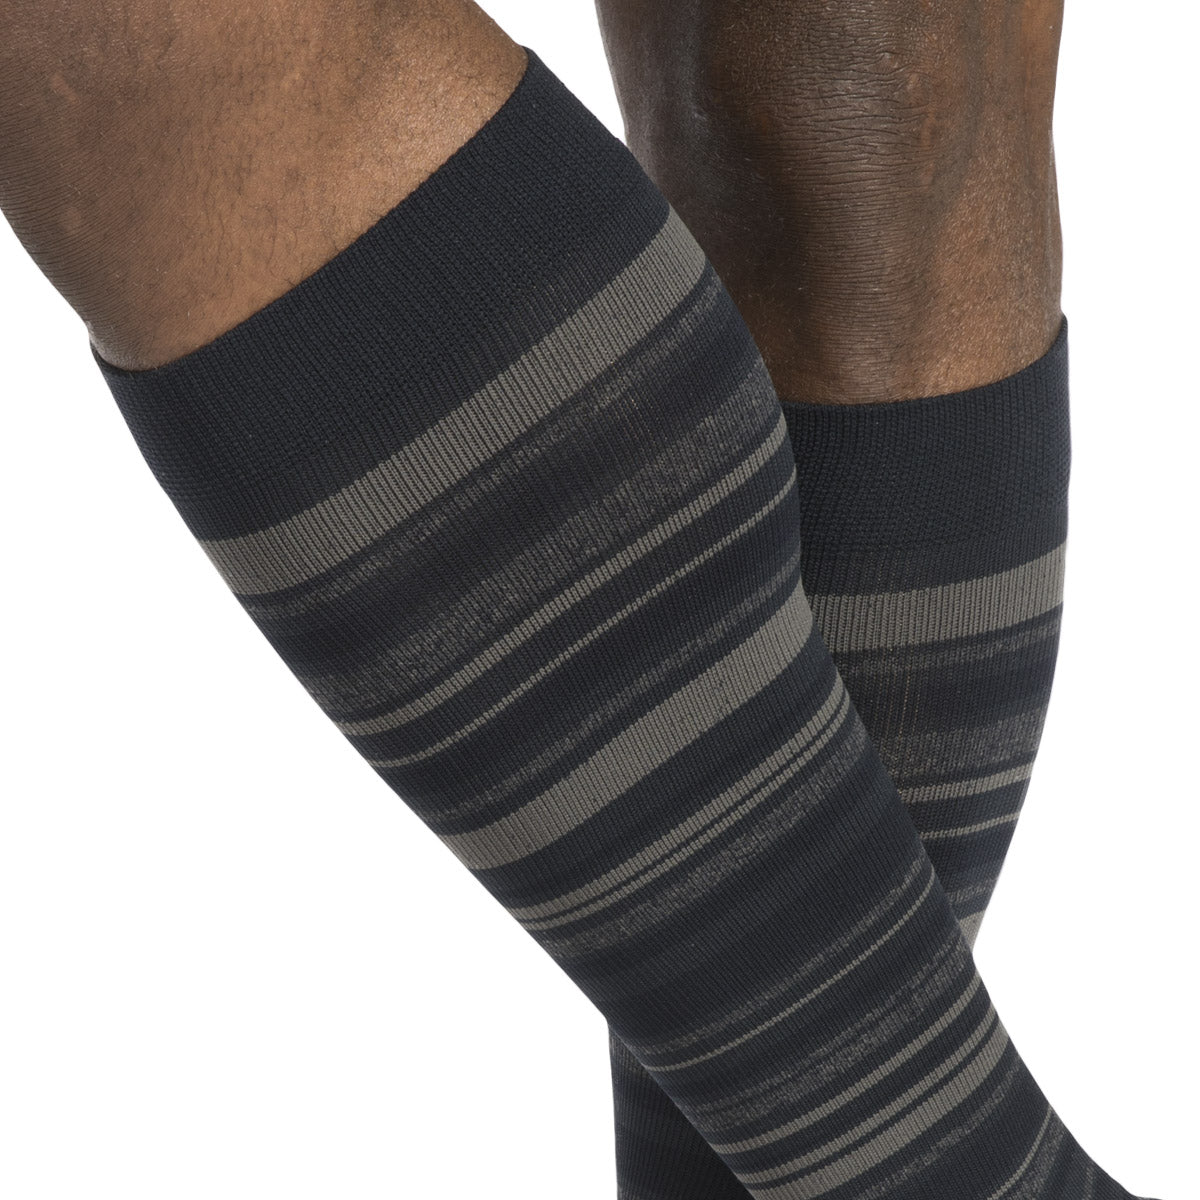 Sigvaris Microfiber Shades Knee 20-30 mmHg – LegSmart Compression Socks